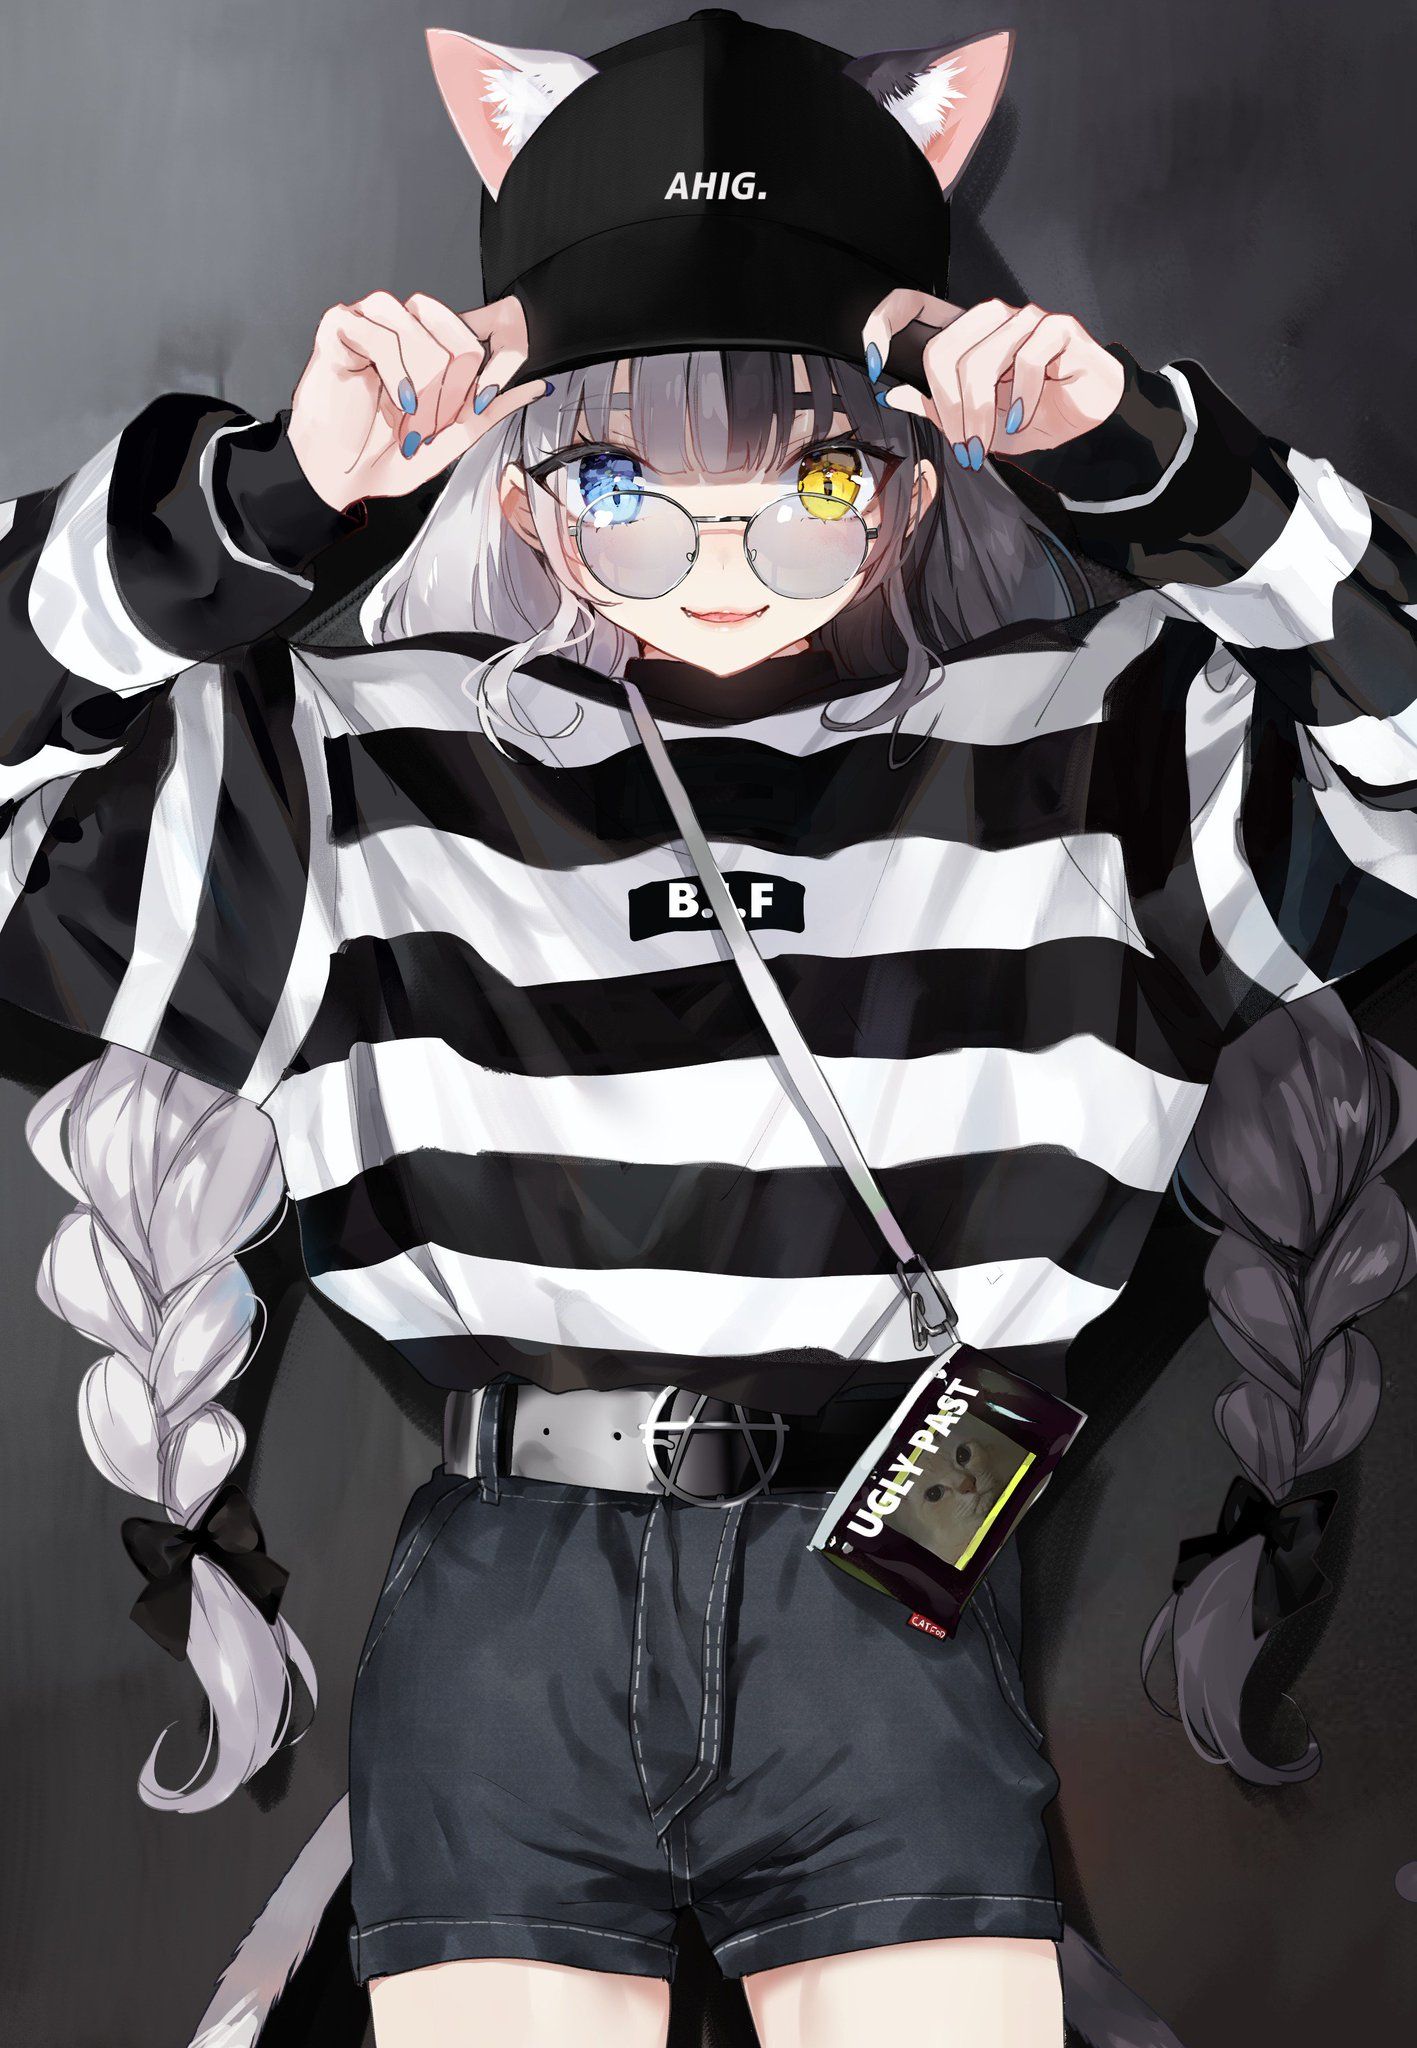 Hình ảnh anime girl đeo kính cute, dễ thương, cuốn hút